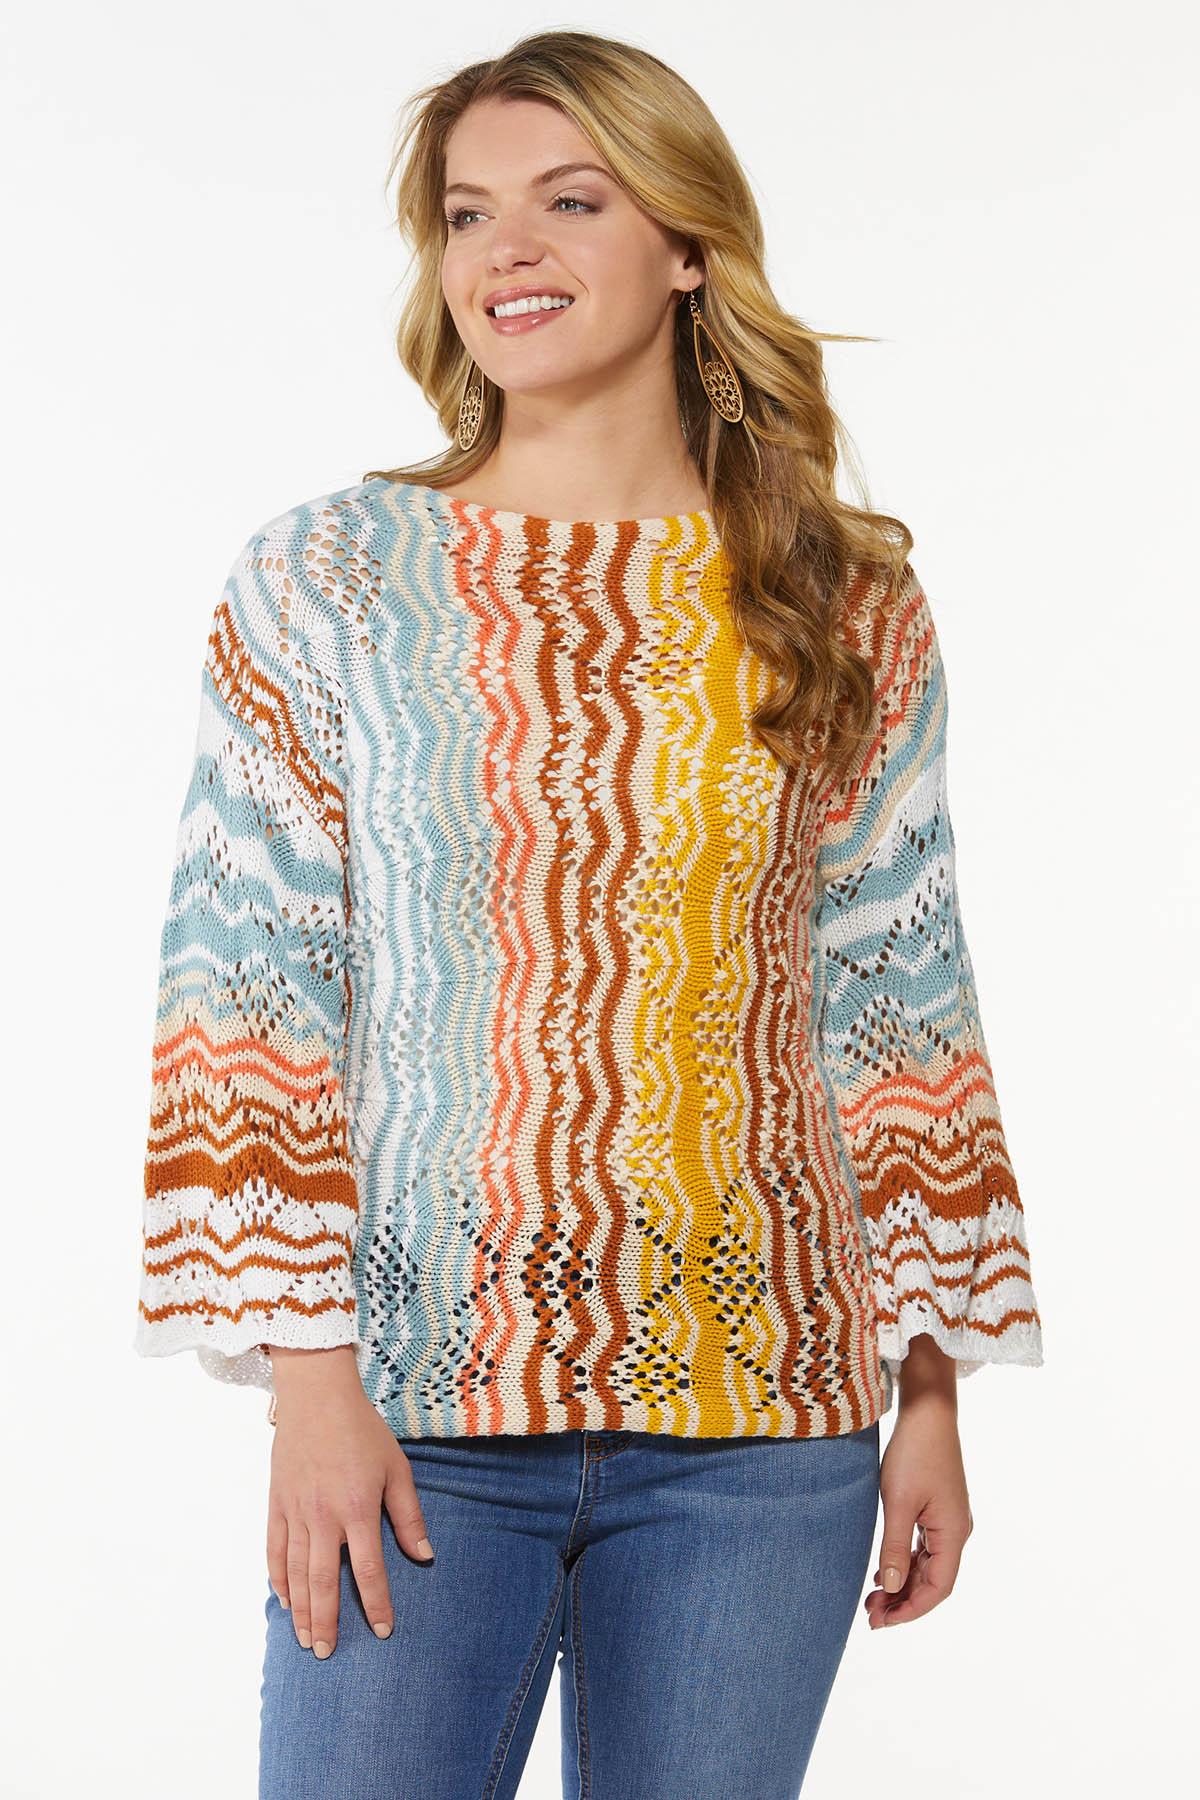 Colorful Chevron Sweater